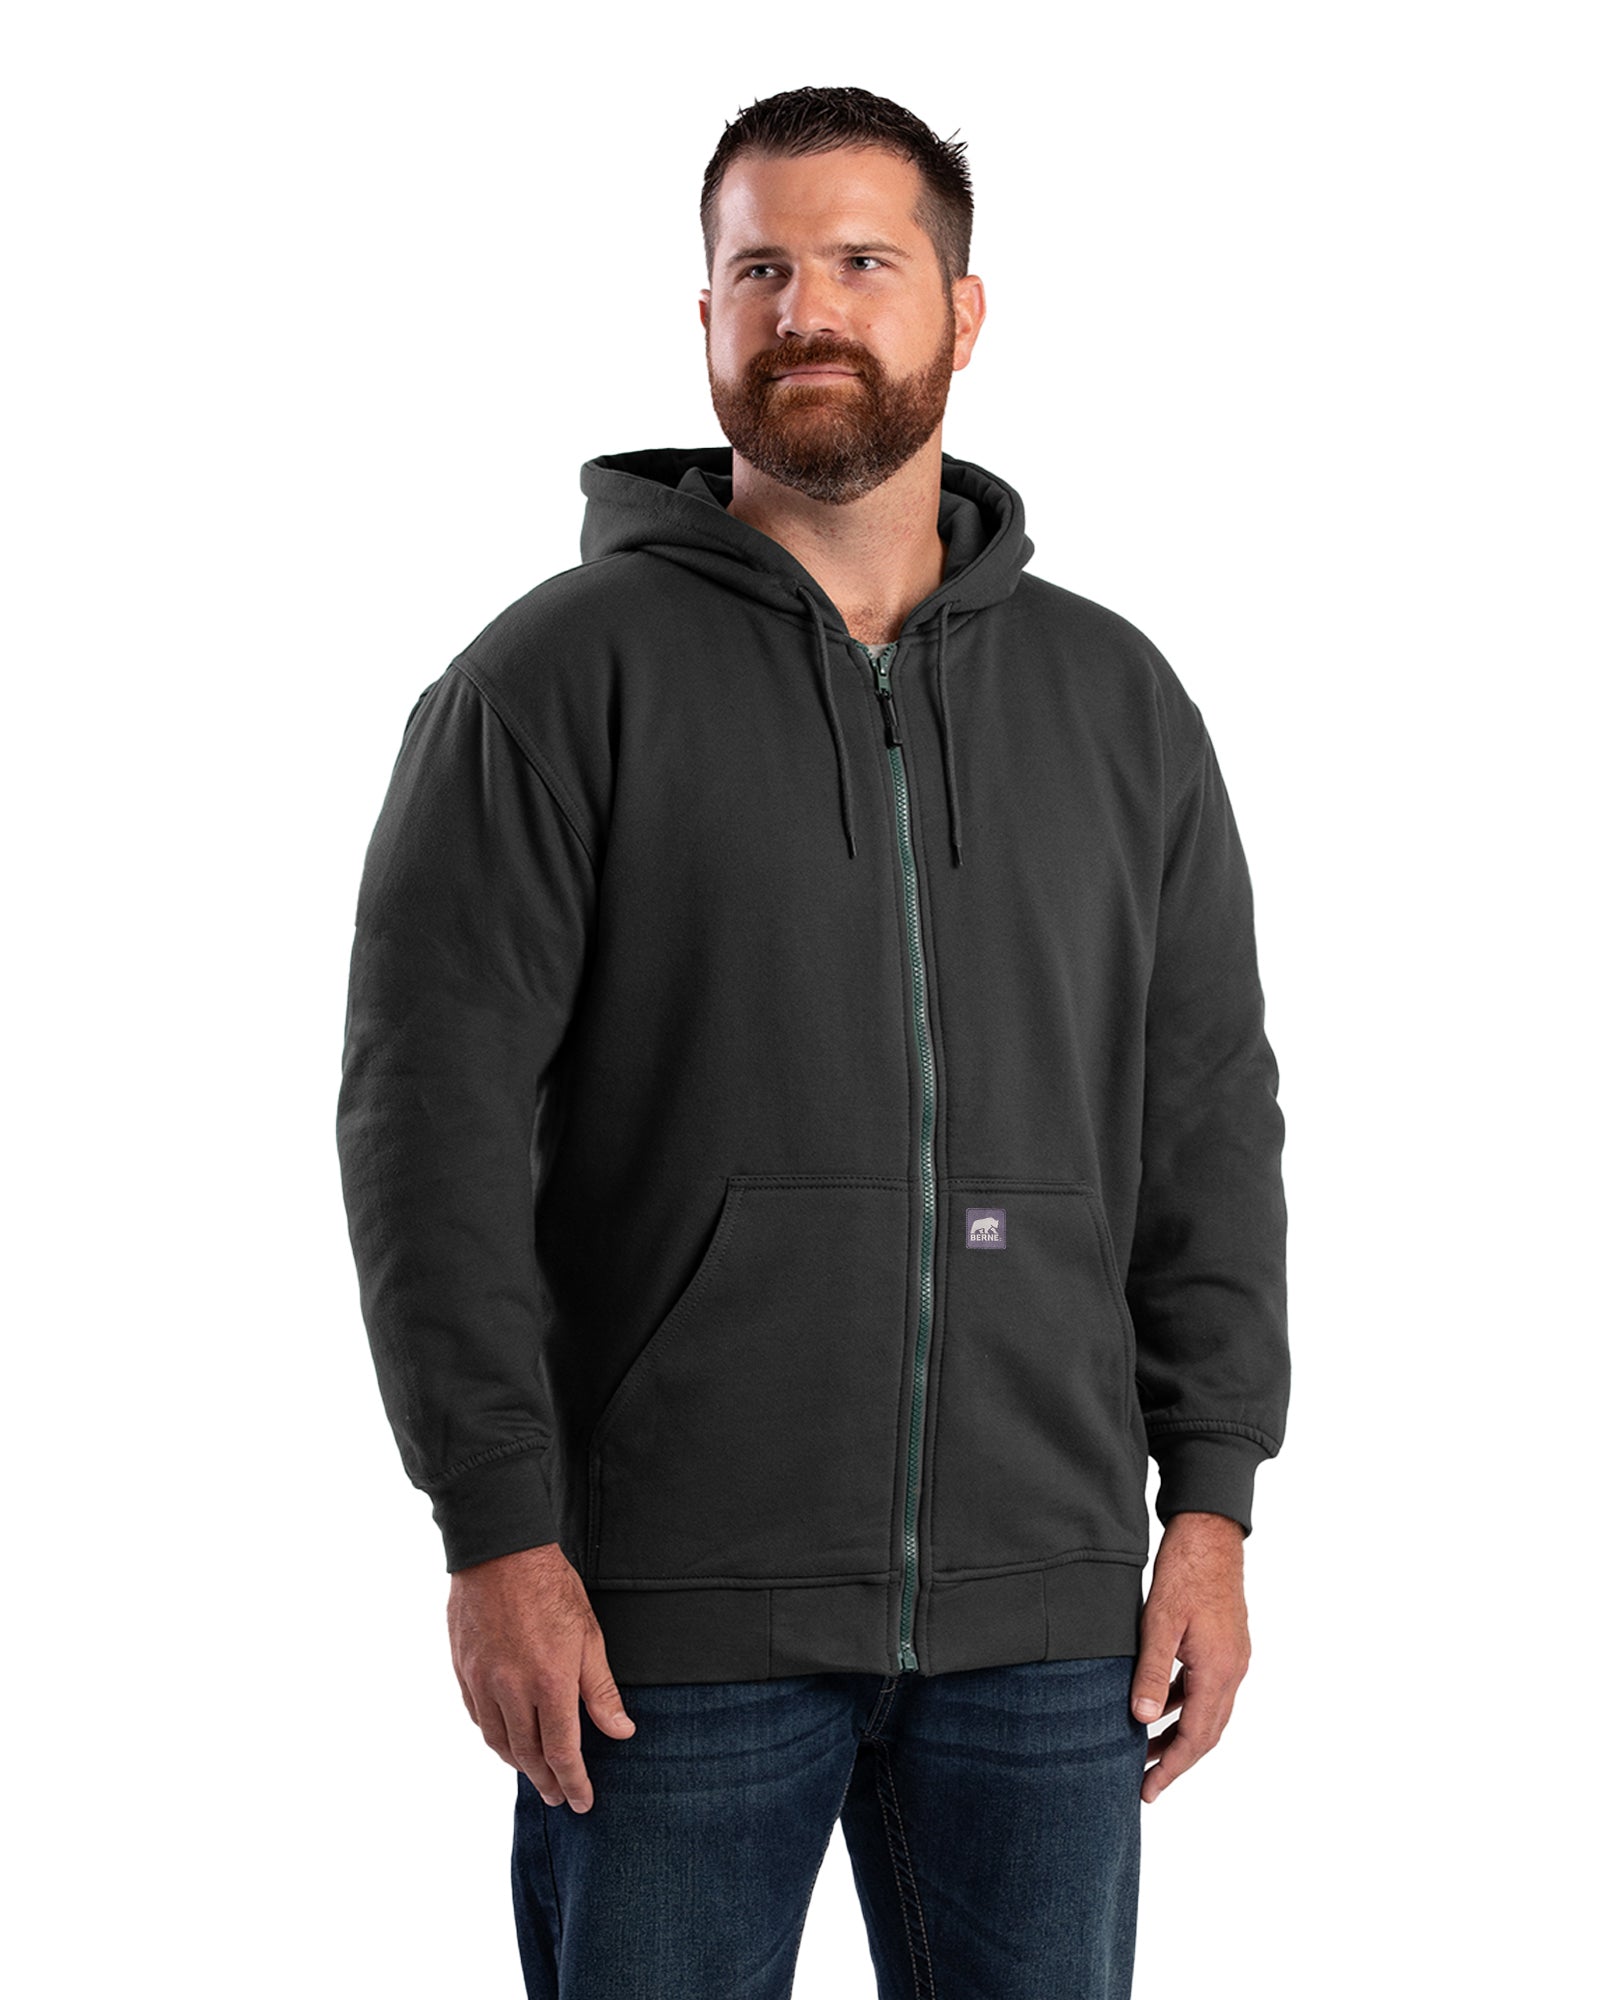 SZ101BK Heritage Thermal-Lined Full-Zip Hooded Sweatshirt